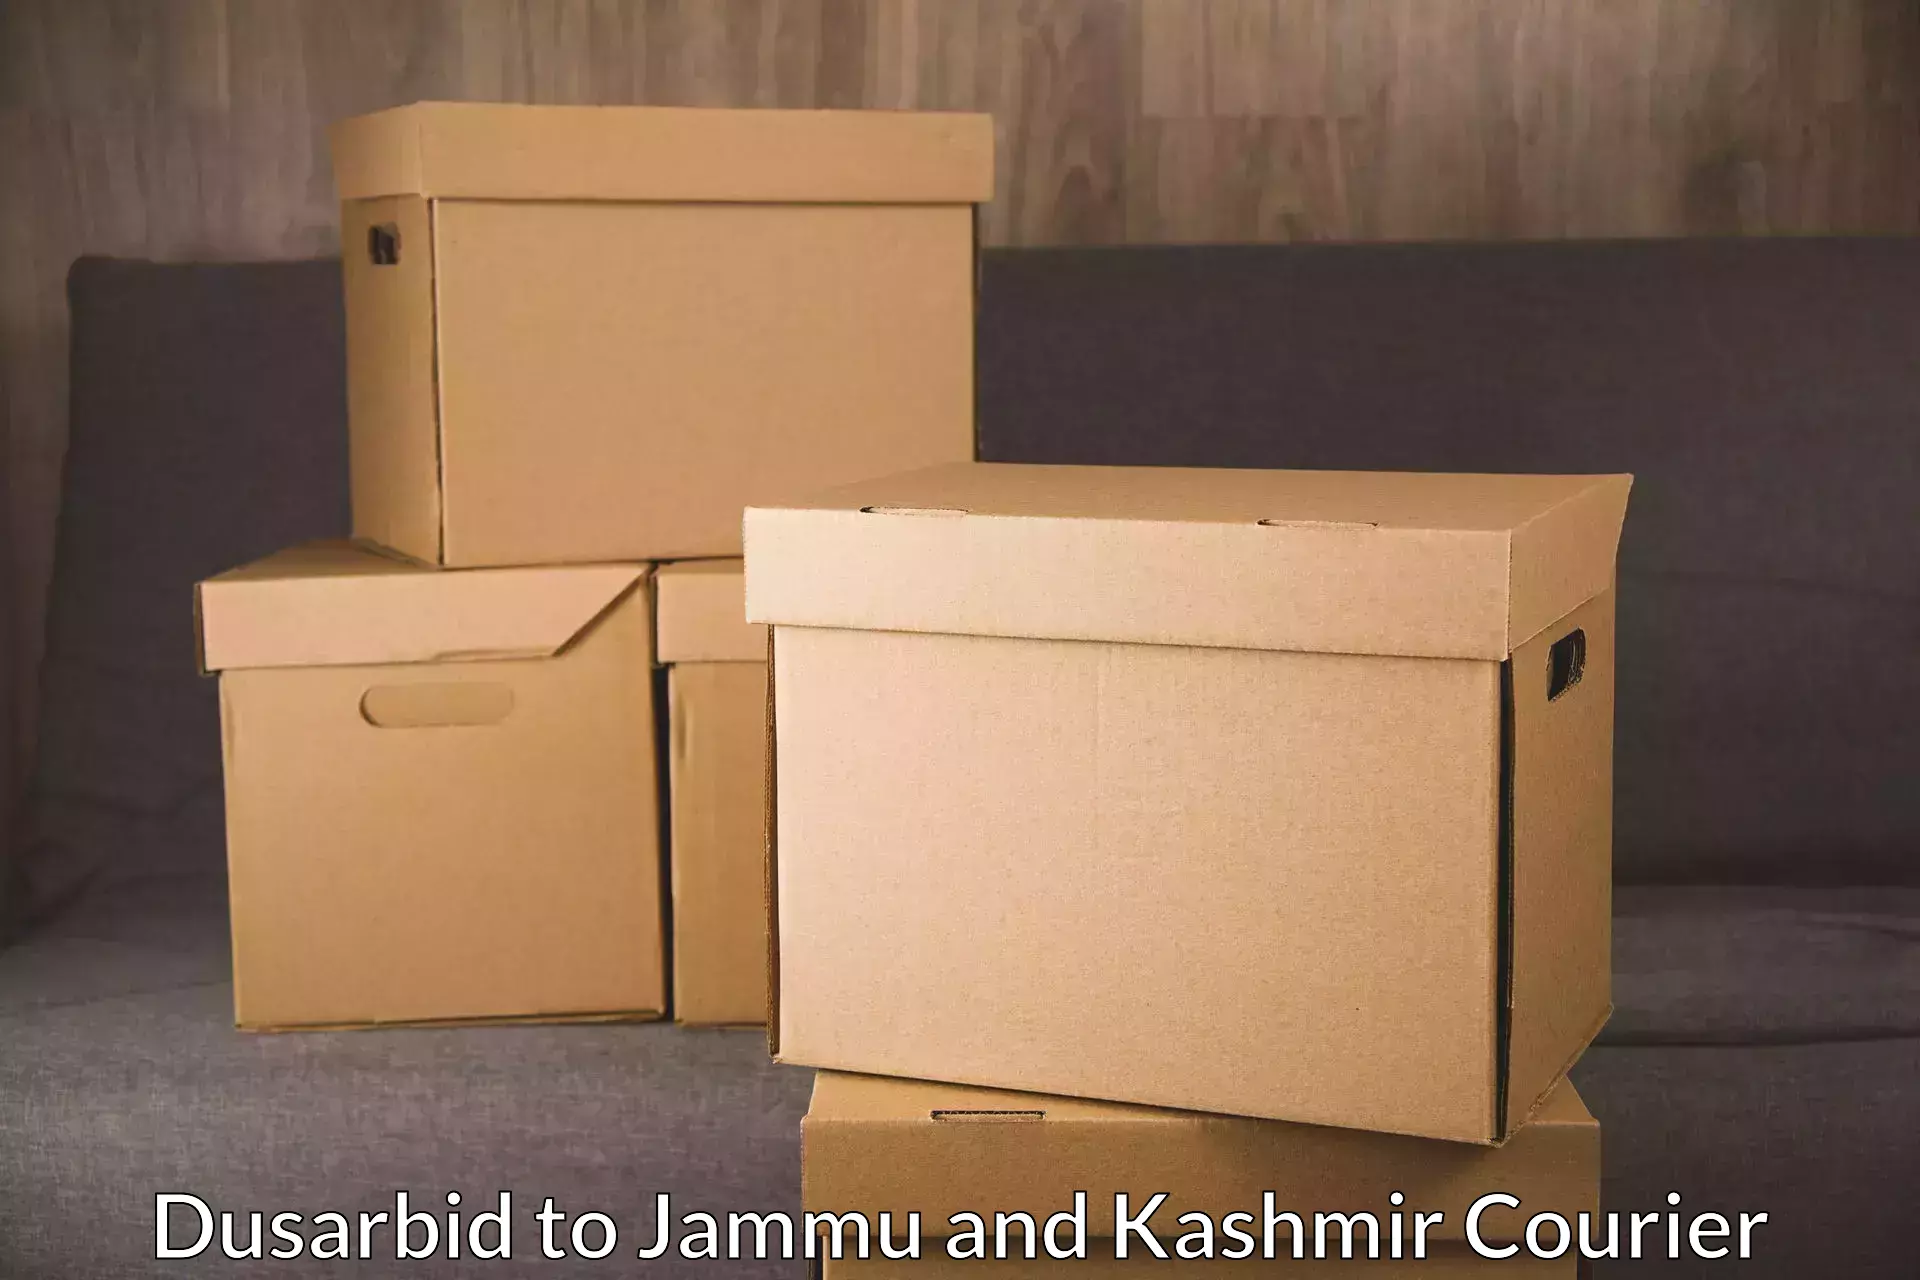 Courier dispatch services Dusarbid to Srinagar Kashmir